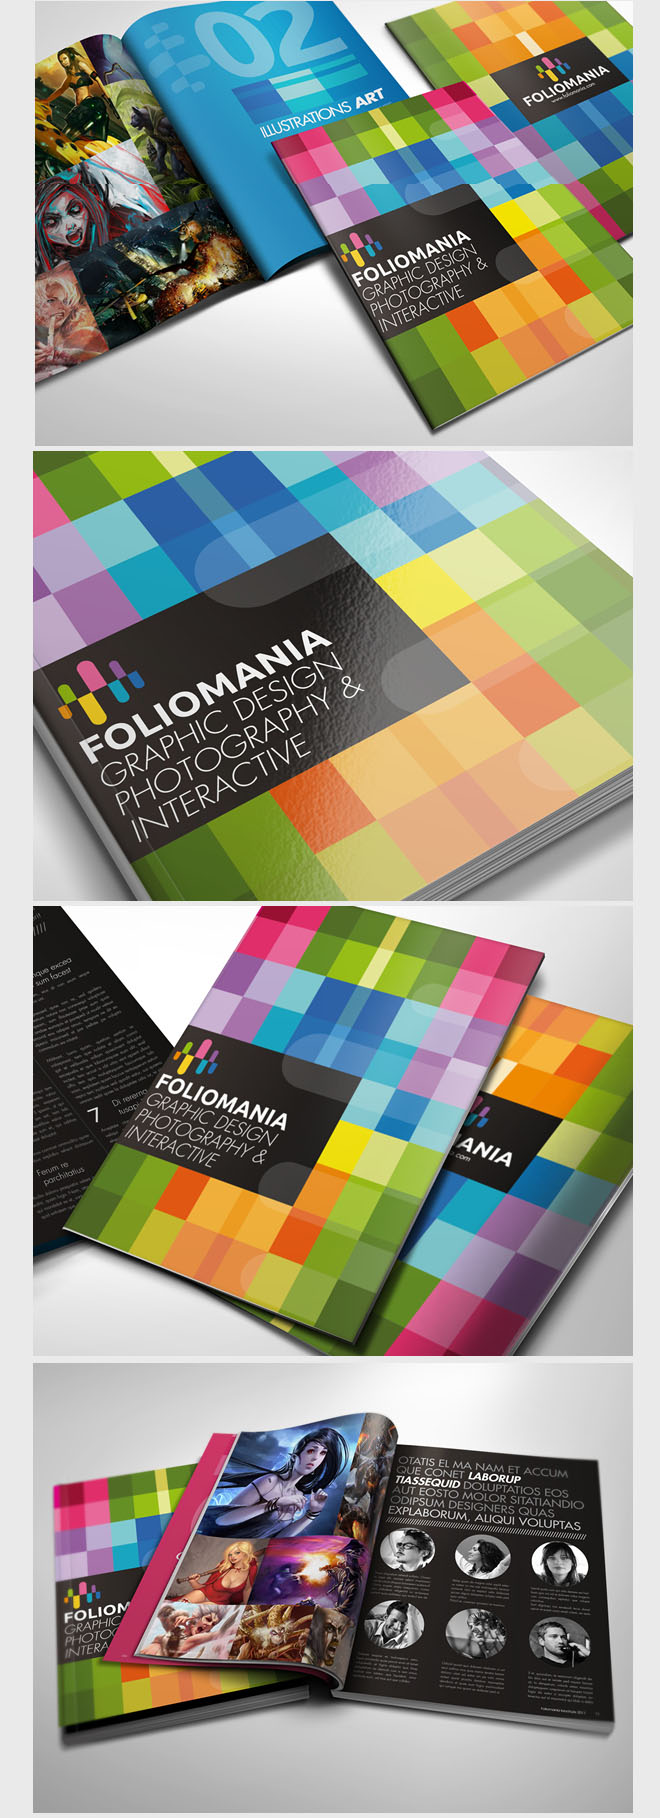 1-foliomania-portfolio-brochure